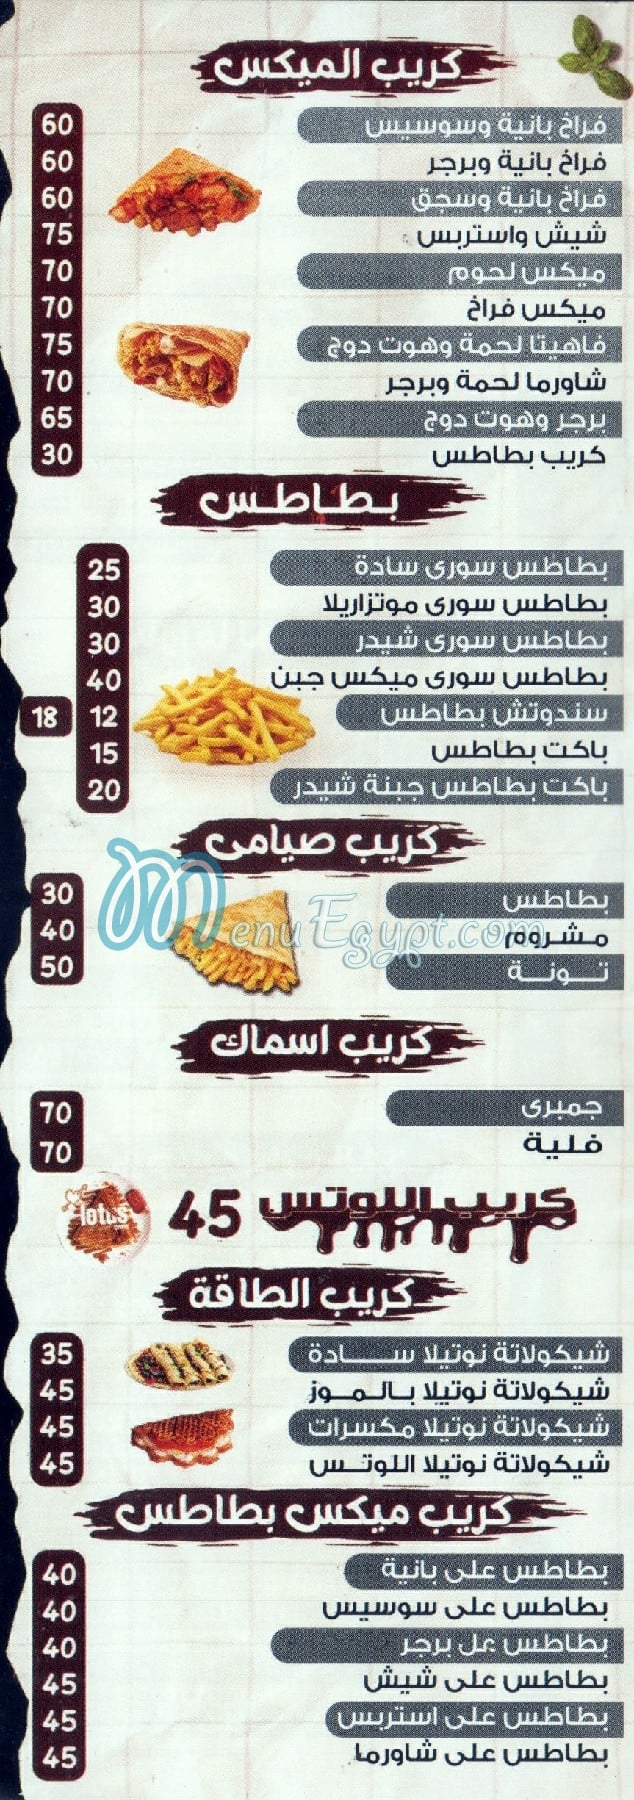 El Mohtaref menu